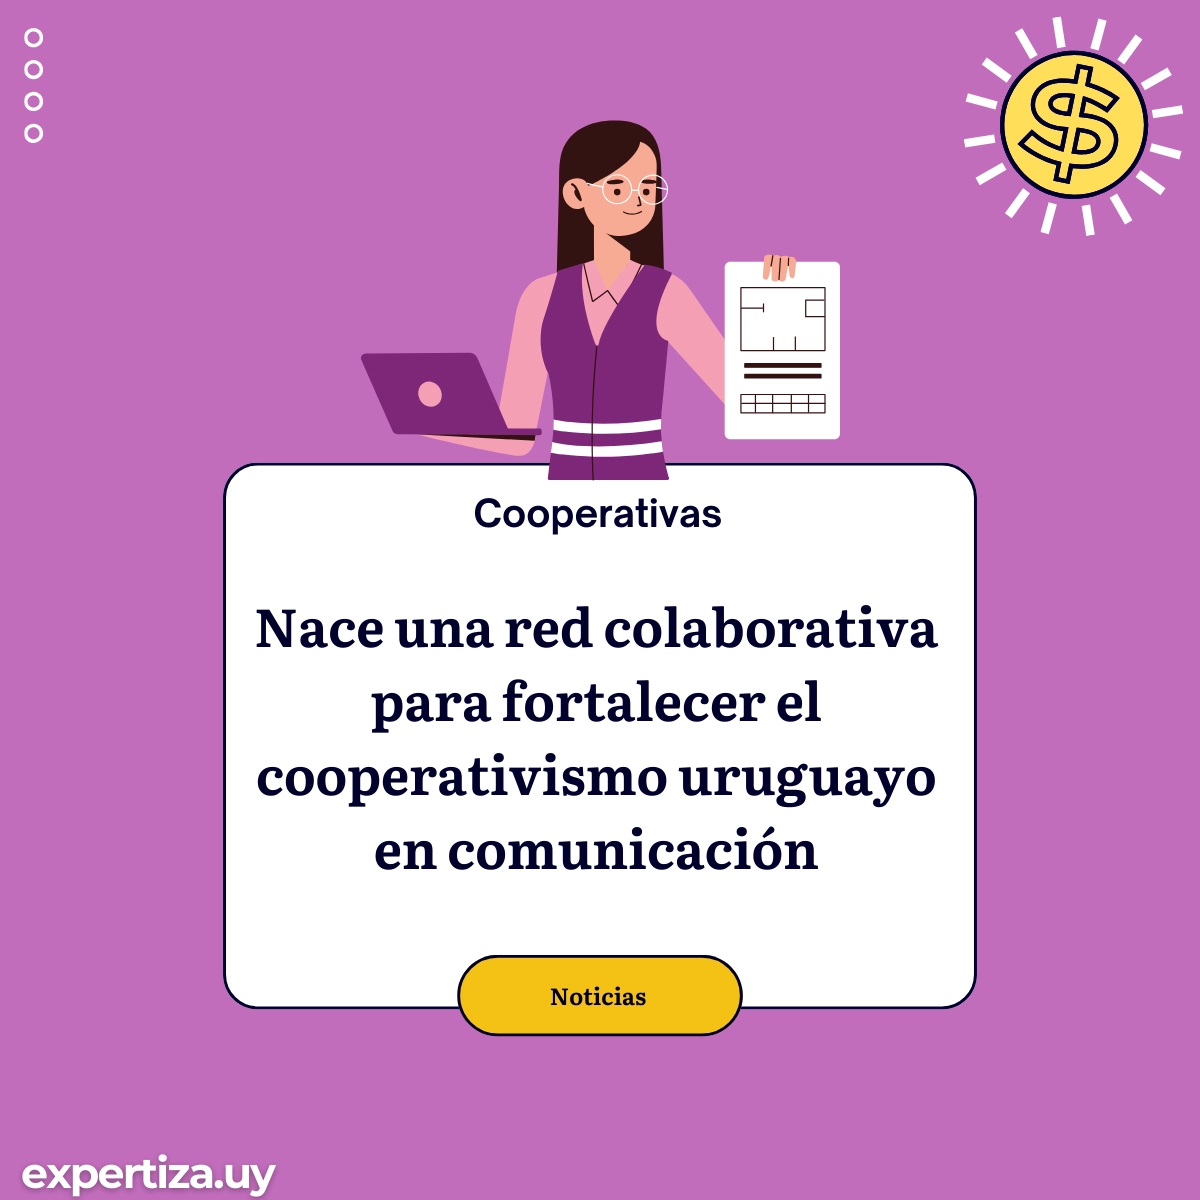 Nace una red colaborativa para fortalecer el cooperativismo uruguayo en comunicación.